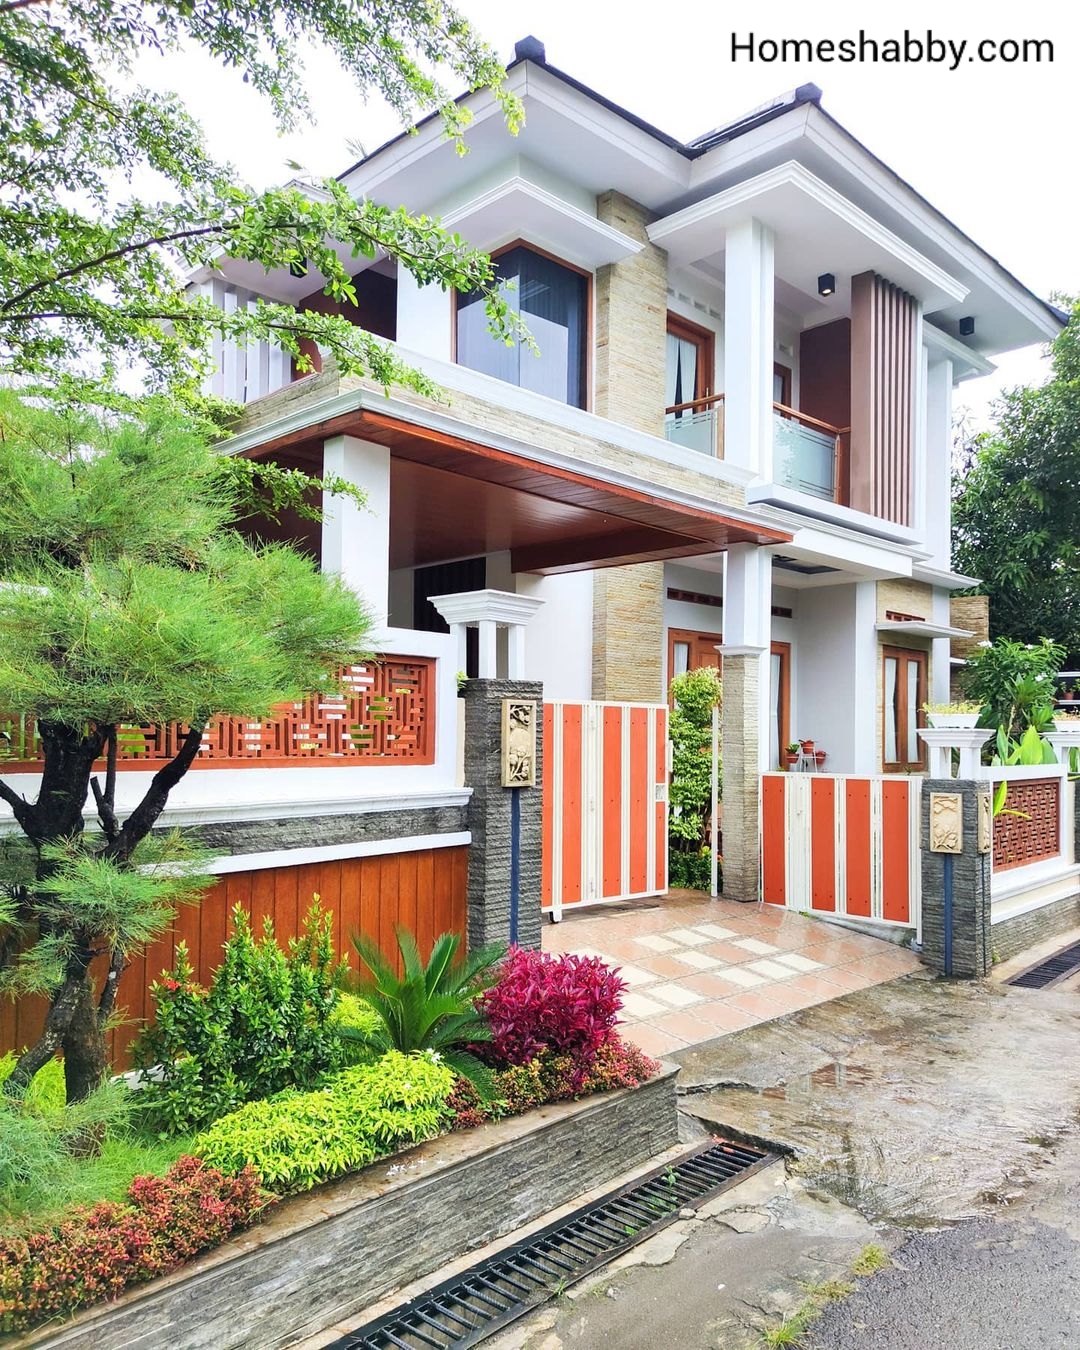 6 Desain Pagar Besi Minimalis Dengan Batu Alam Terbaru Homeshabbycom Design Home Plans